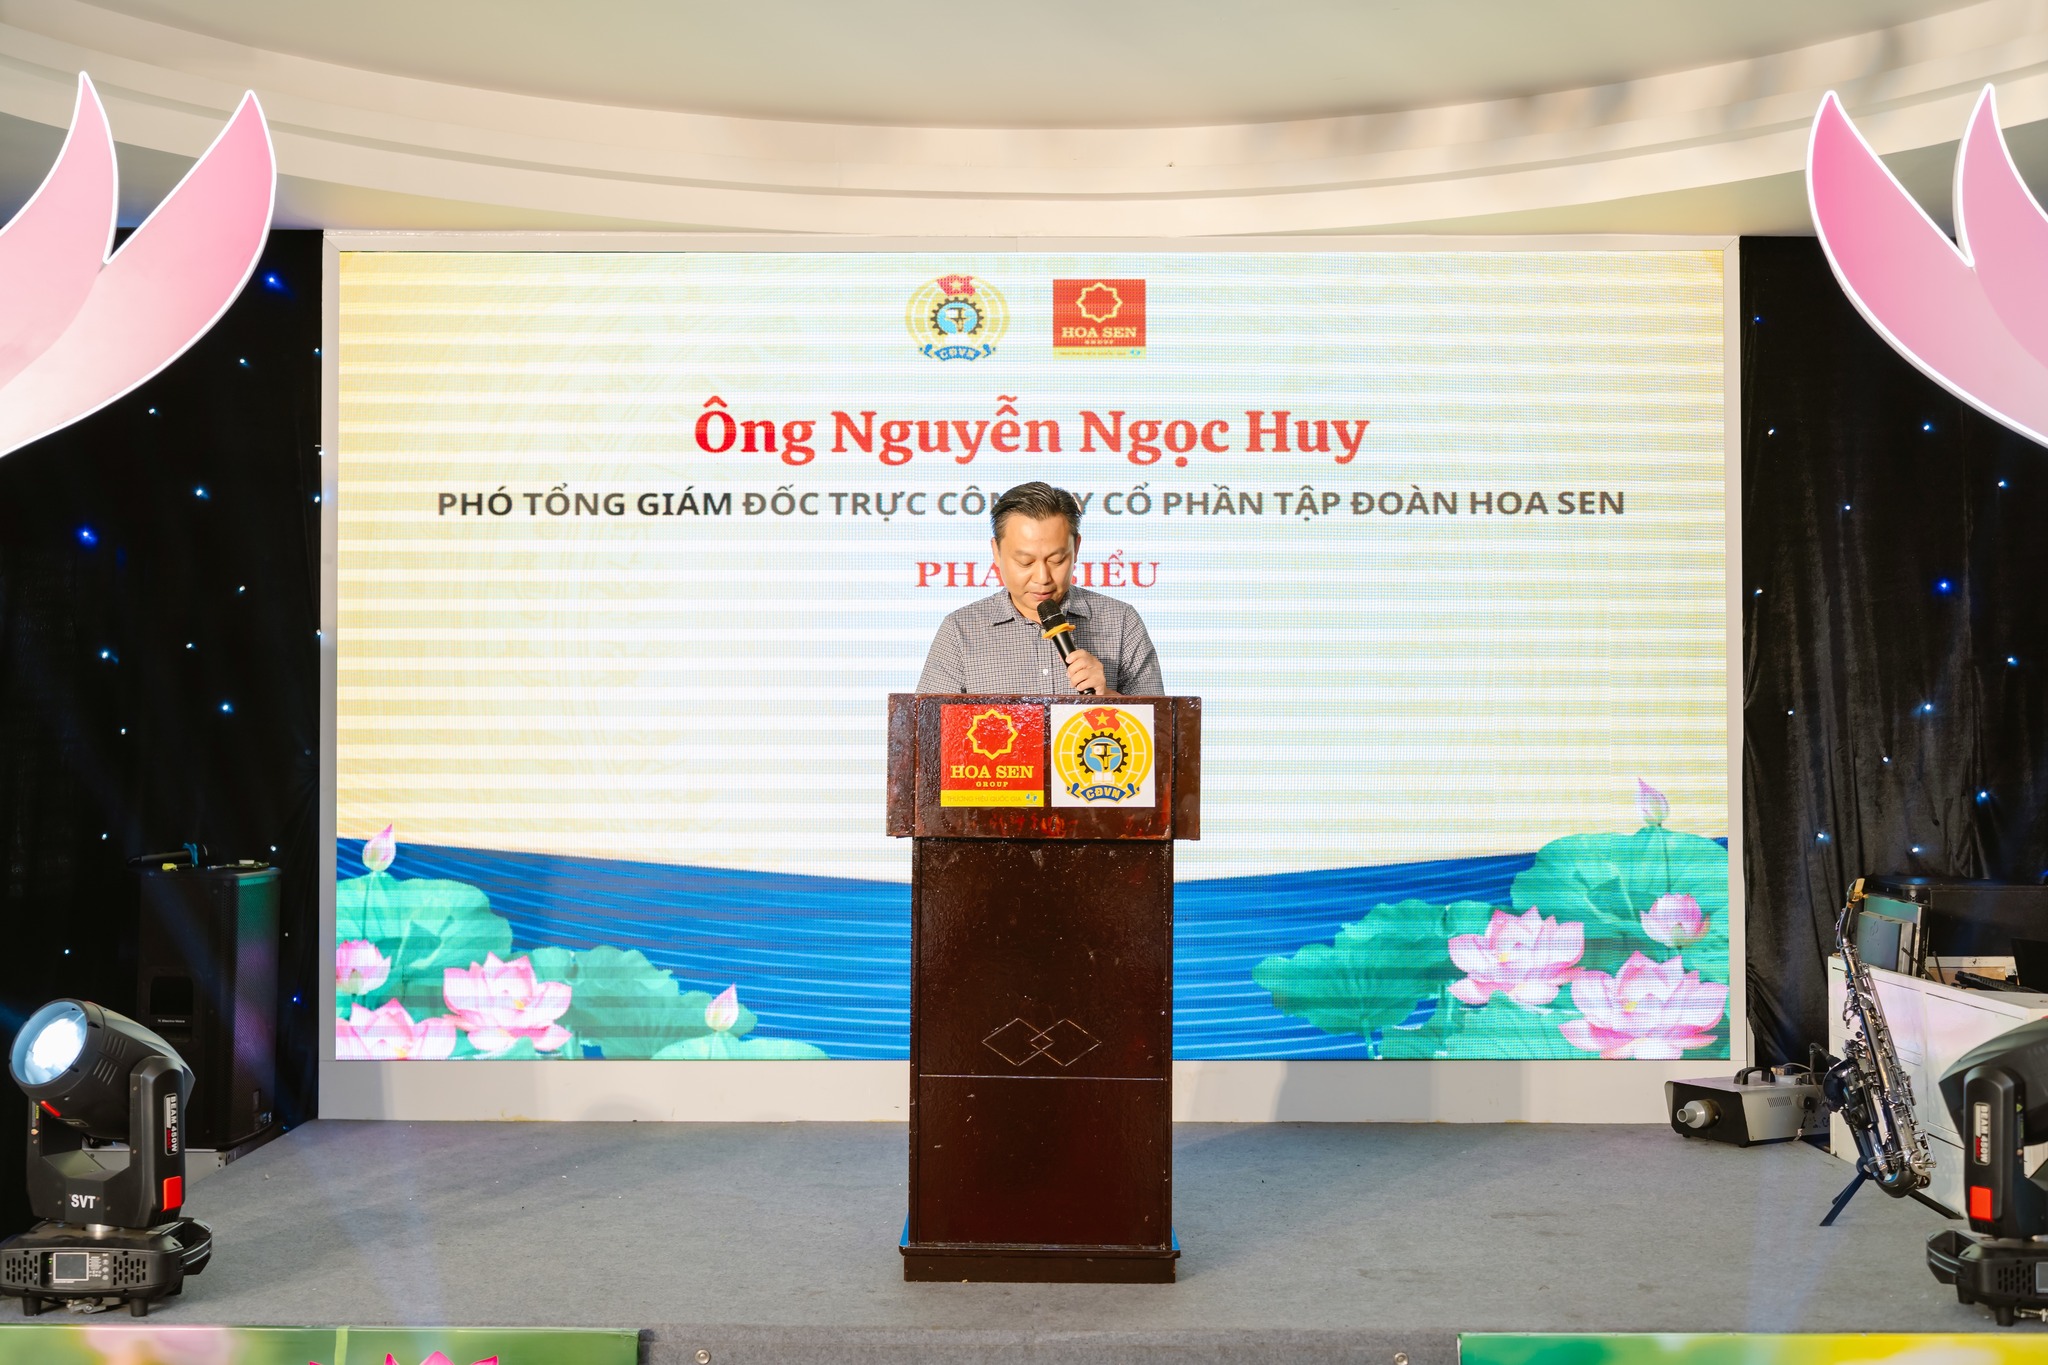 Ông Nguyễn Ngọc Huy – Phó Tổng Giám đốc Trực Tập đoàn Hoa Sen phát biểu